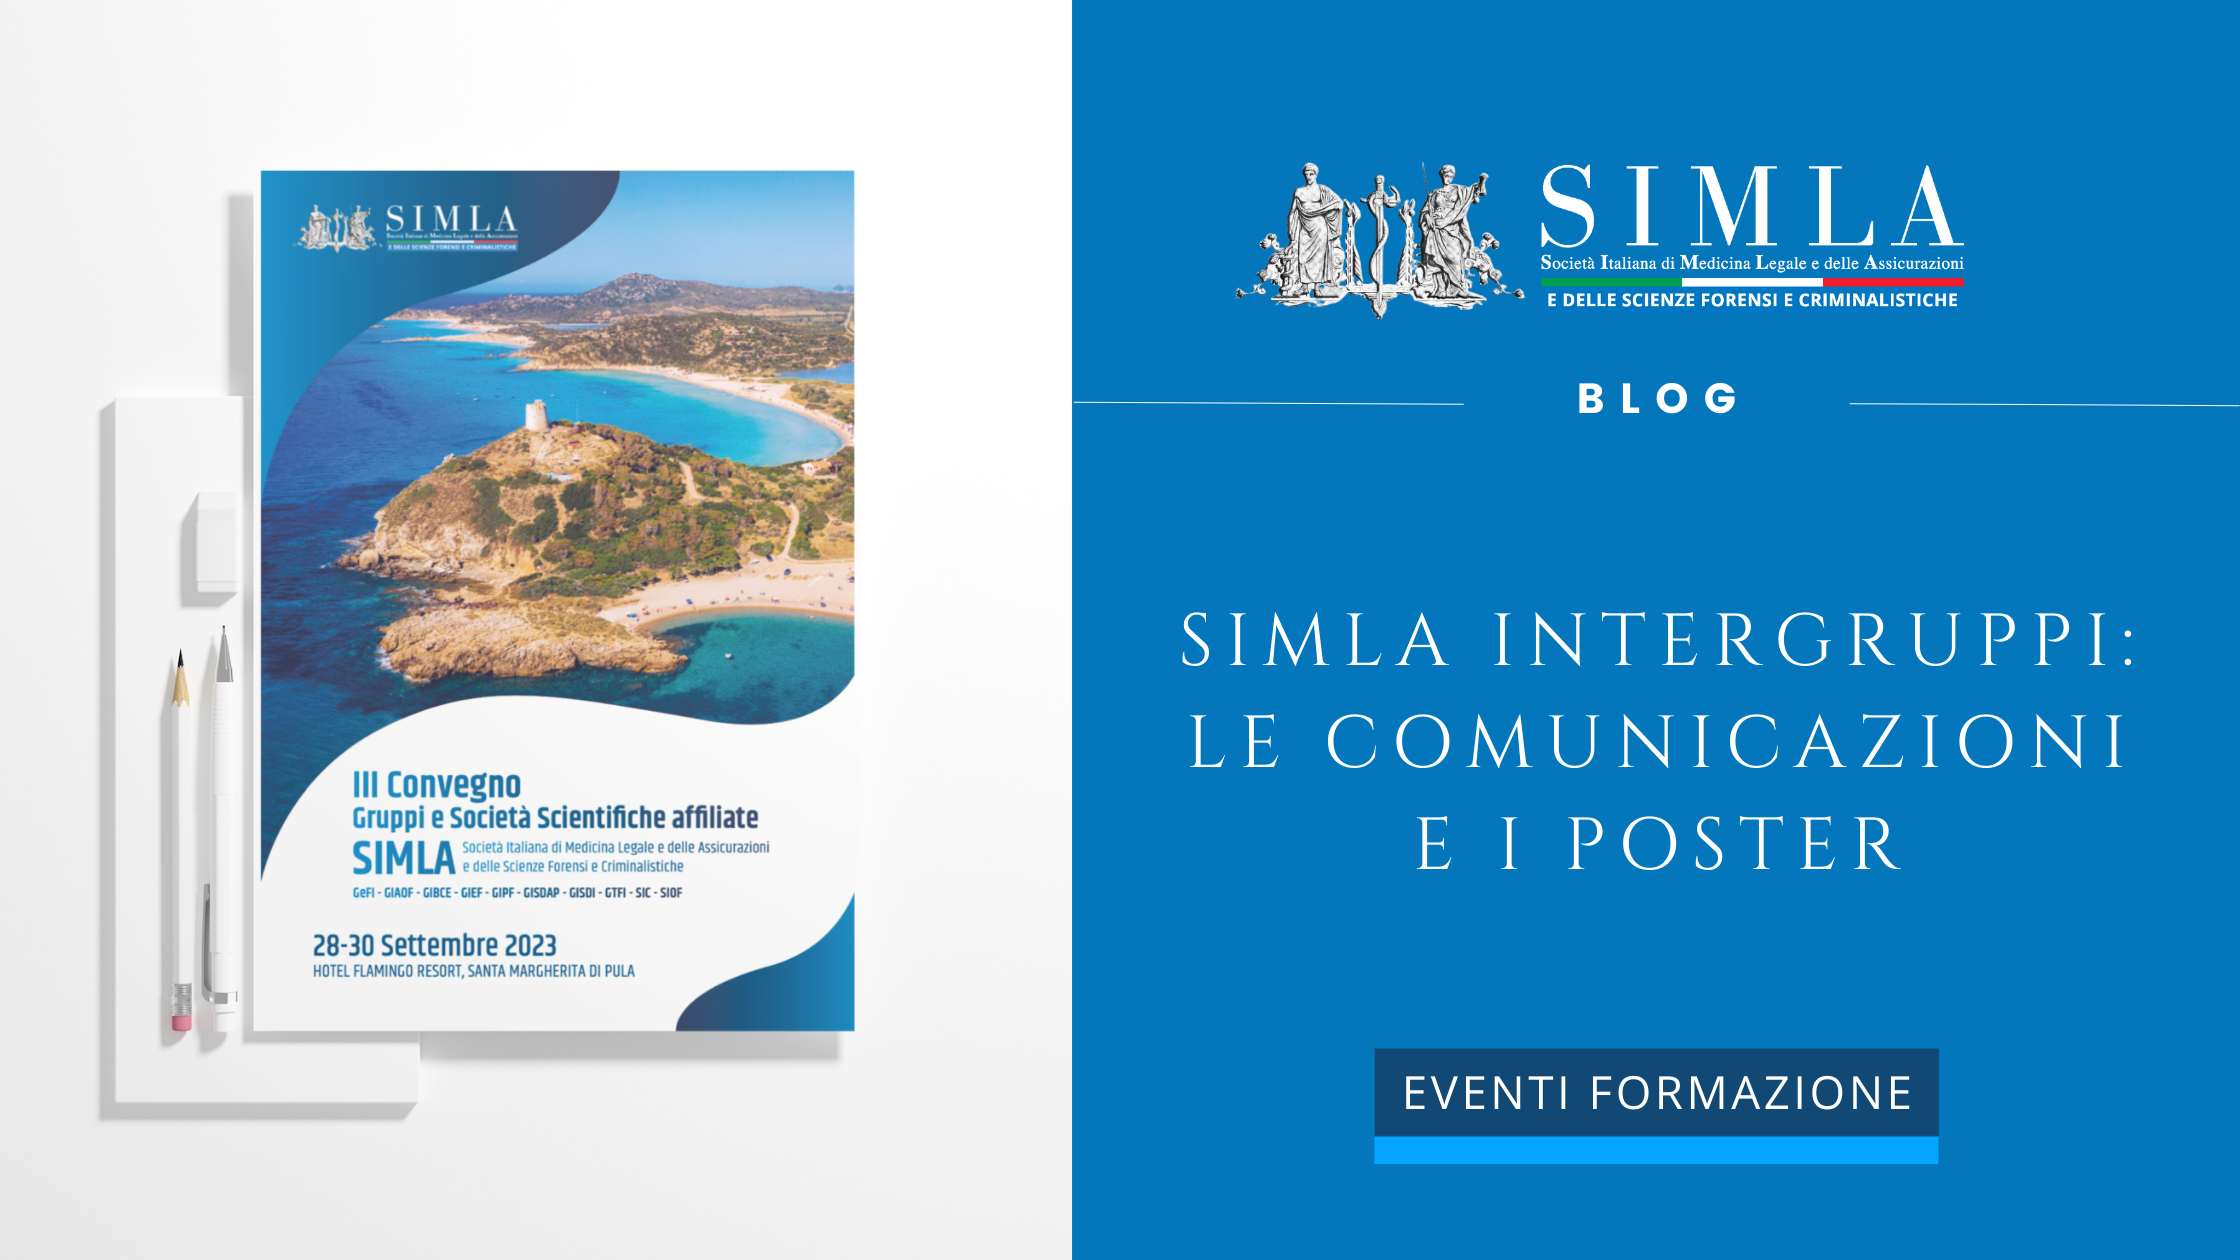 SIMLA Intergruppi: le comunicazioni e i poster - Società Italiana di  Medicina Legale e delle Assicurazioni